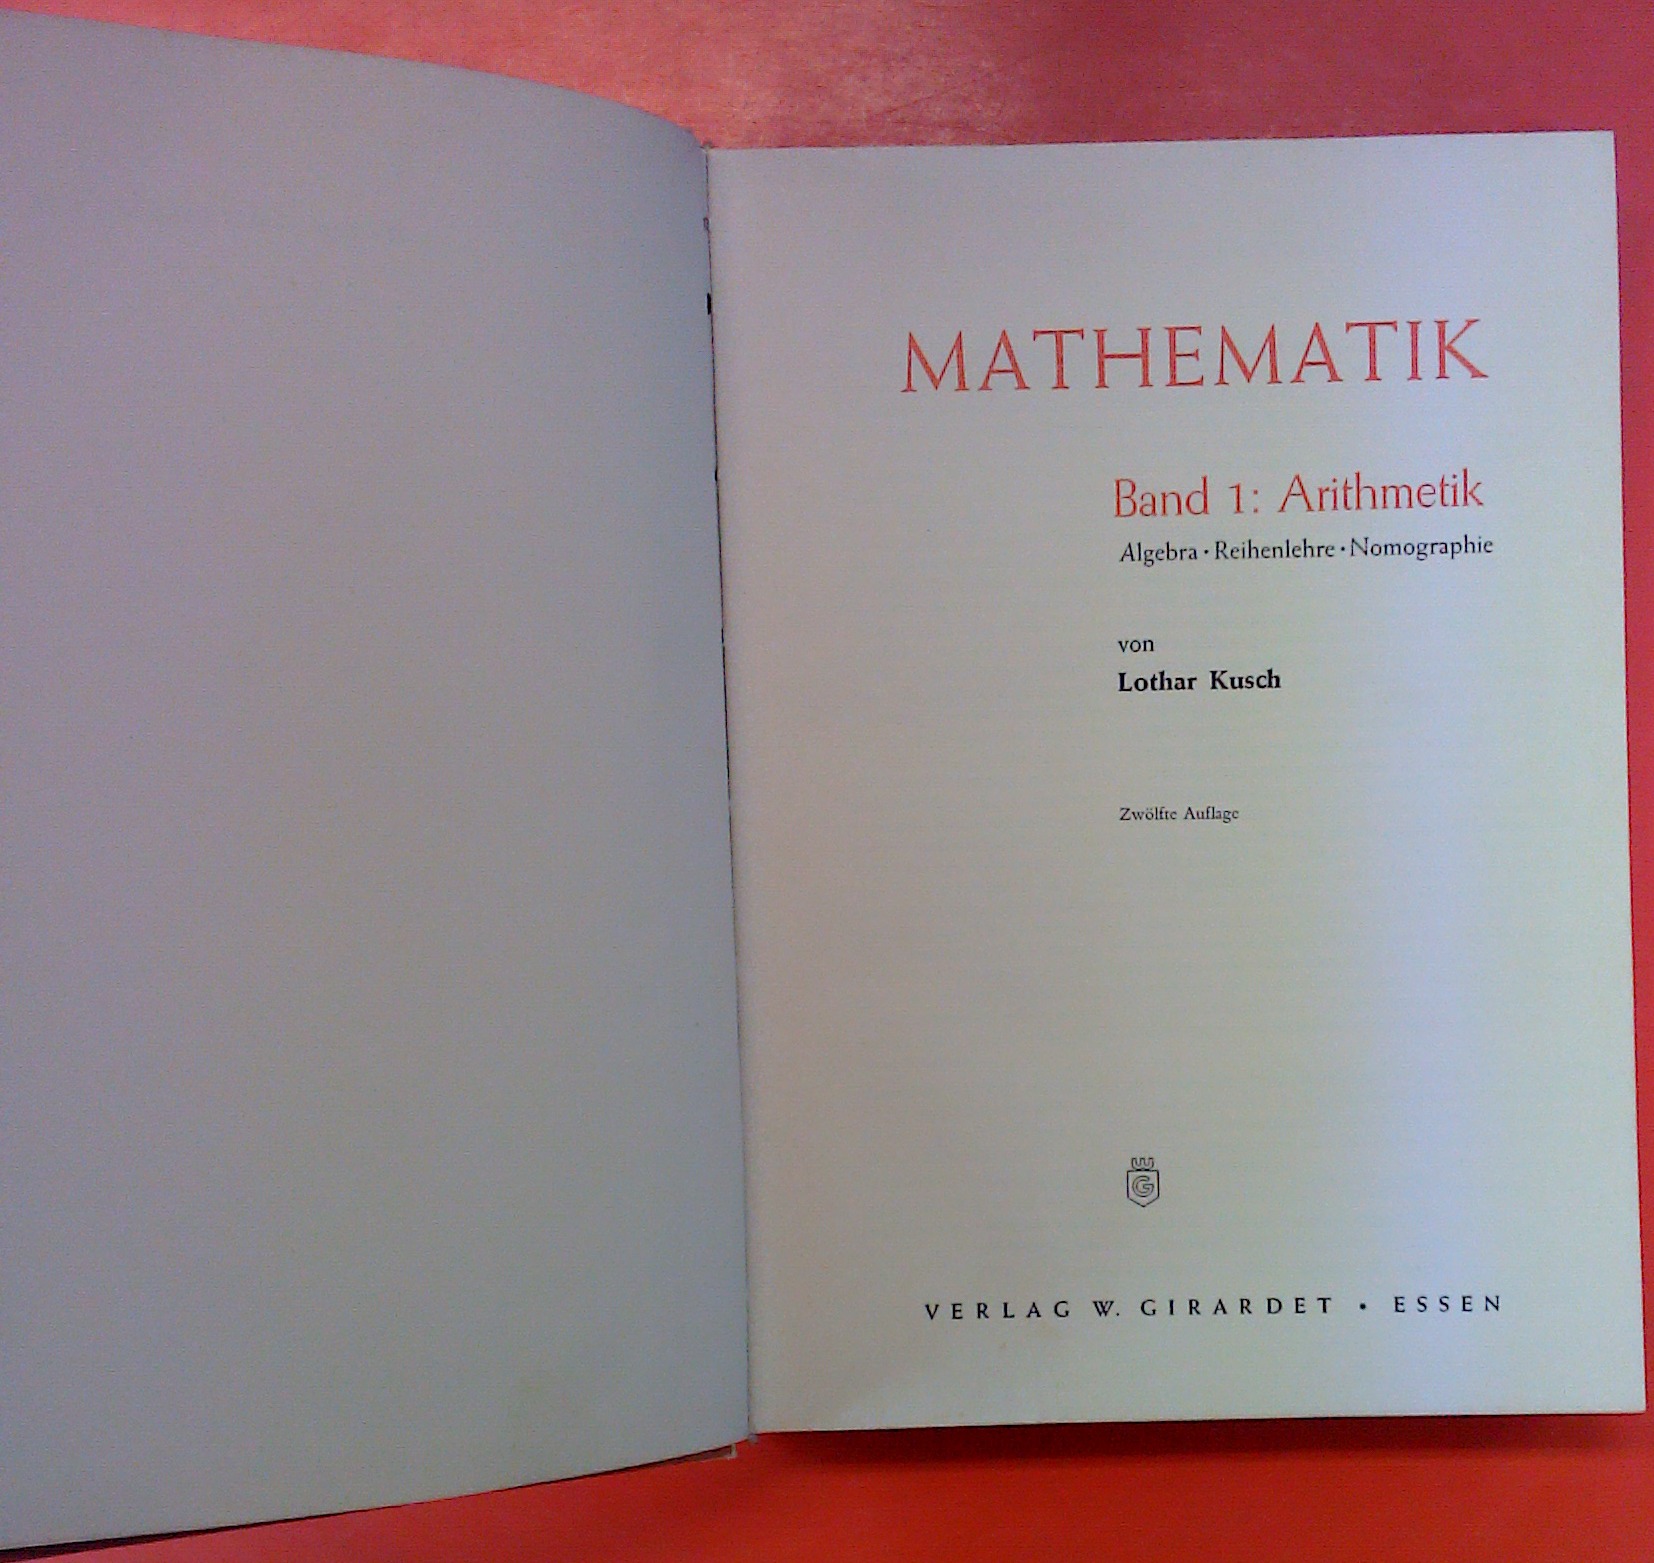 Mathematik Band 1: Arithmetik (Algebra/Reihenlehre/Nomographie). 12. Auflage. - Lothar Kusch